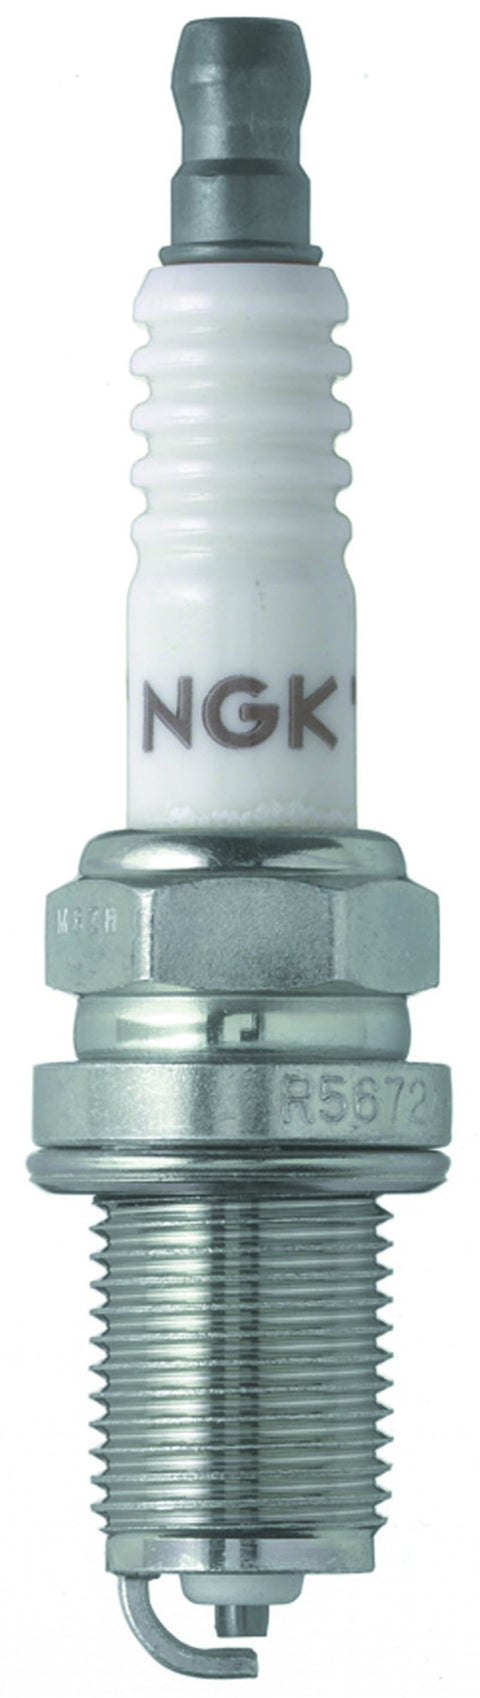 NGK Racing Spark Plug (7173-1)